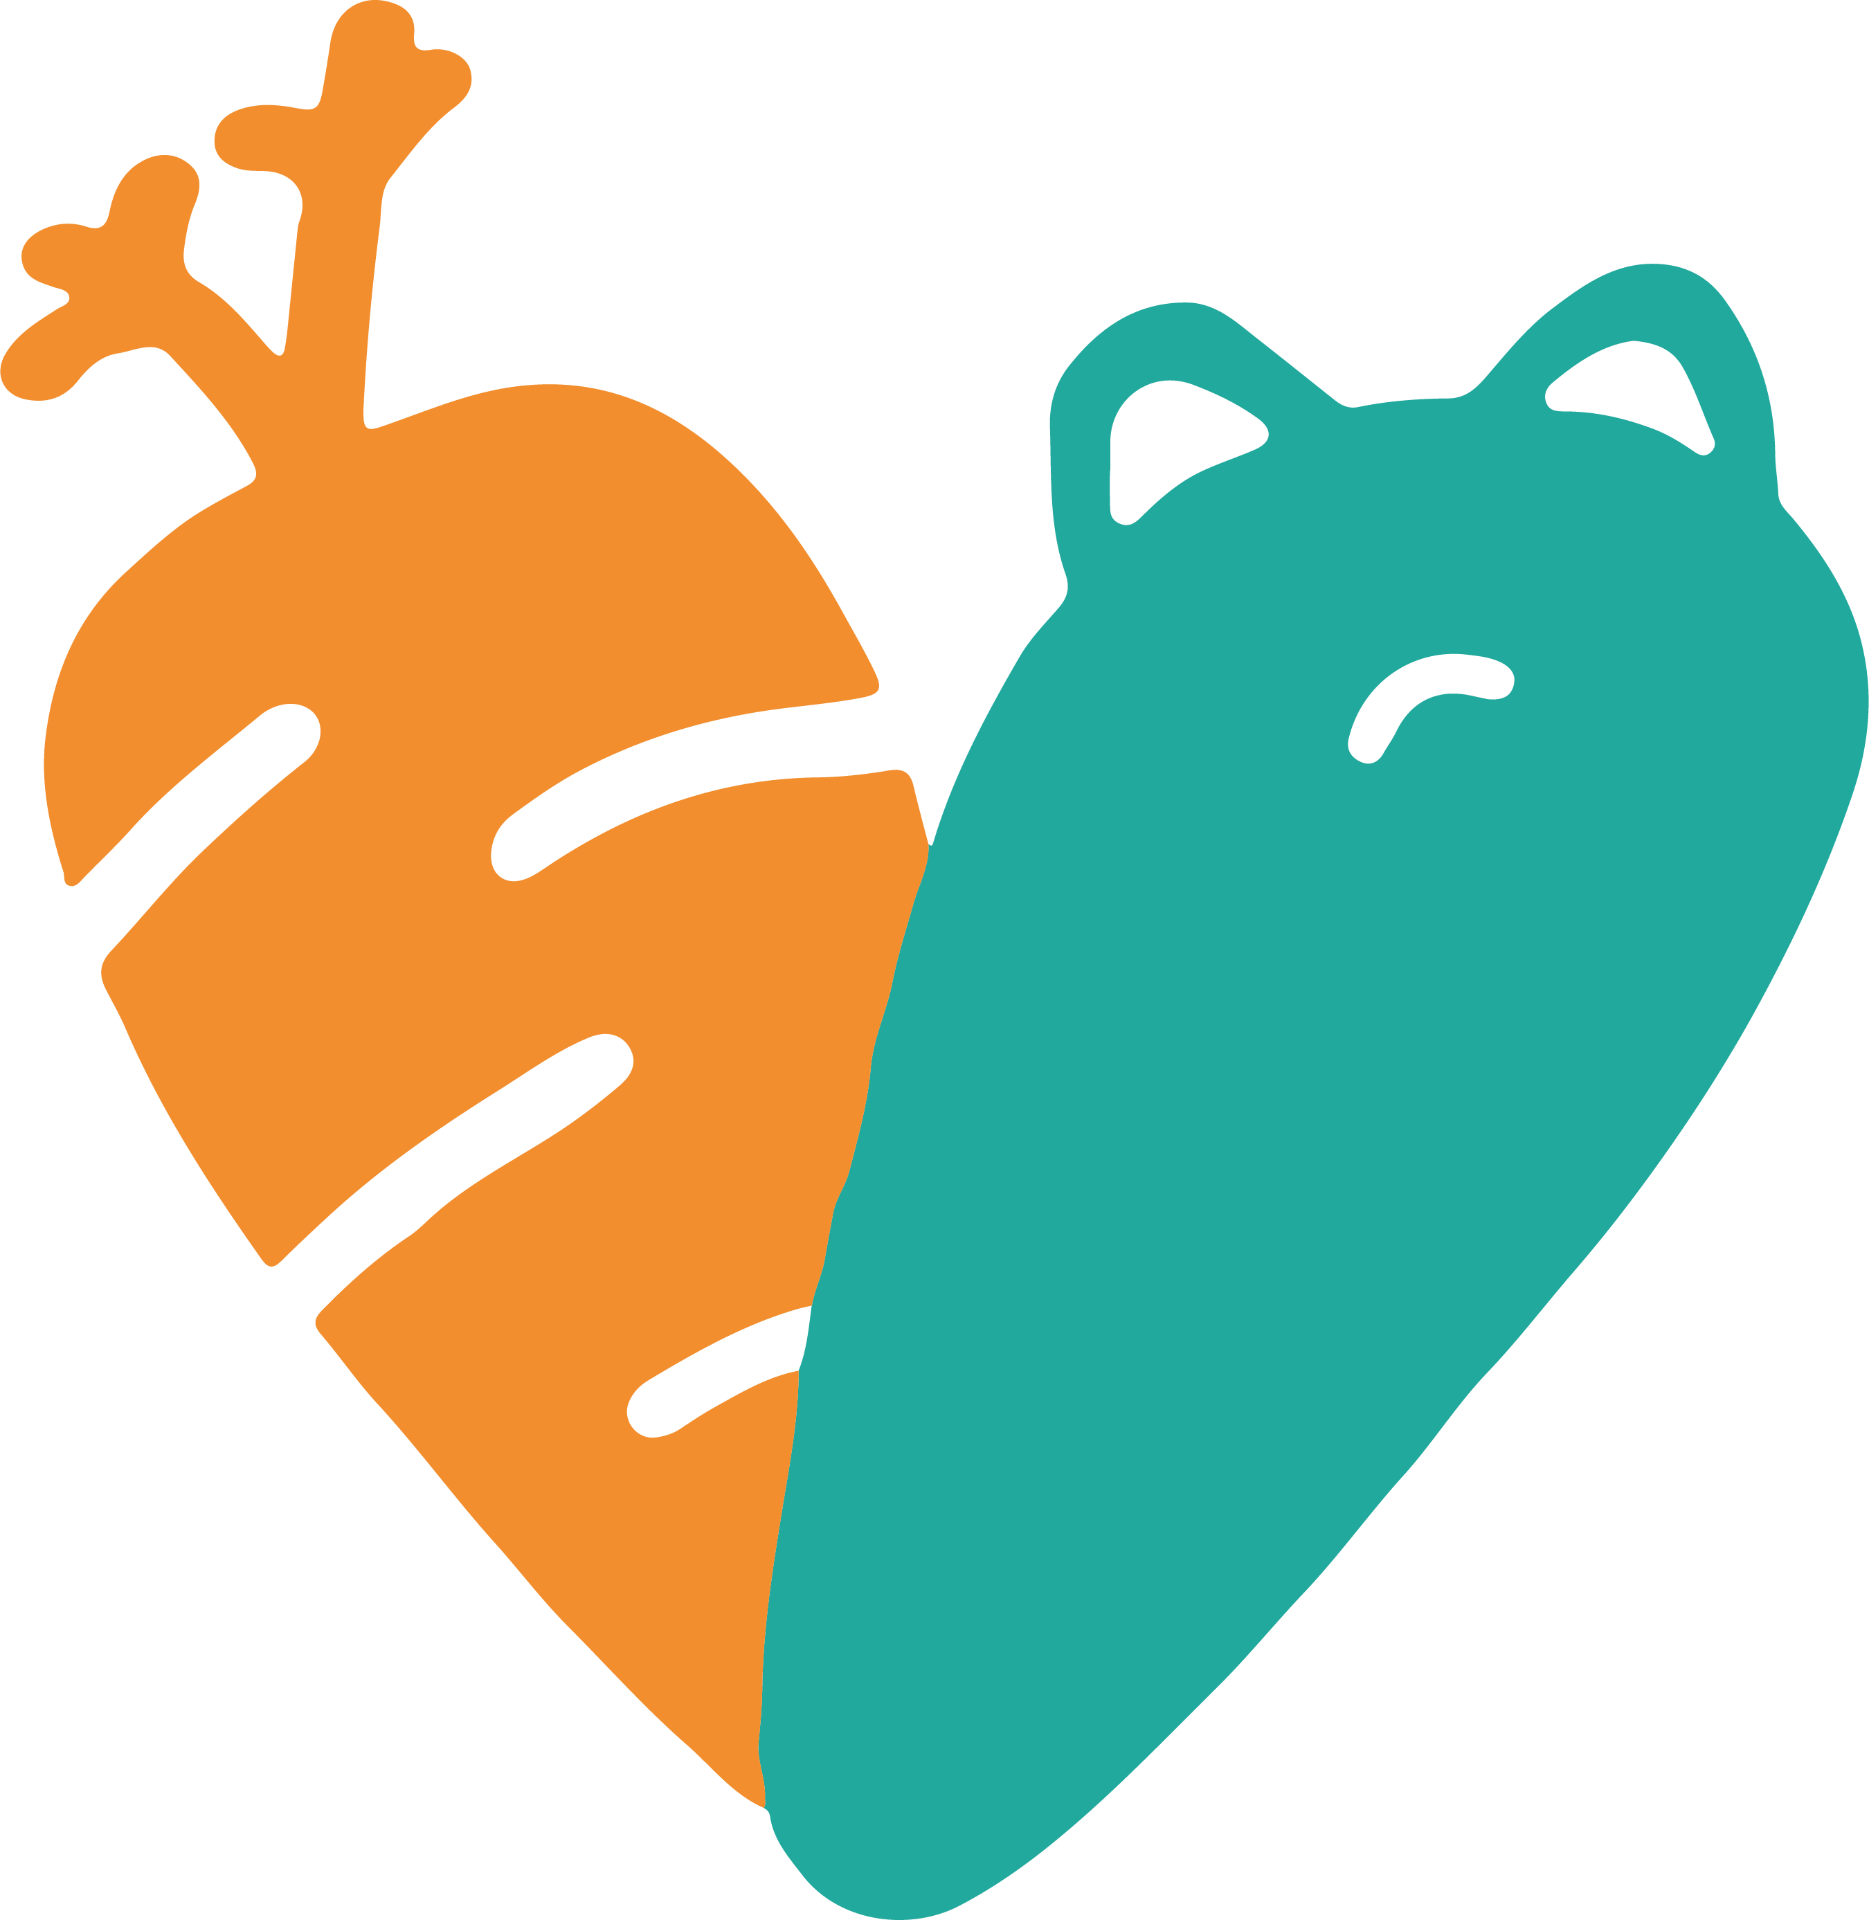 UCI Basic Needs Center heart logo